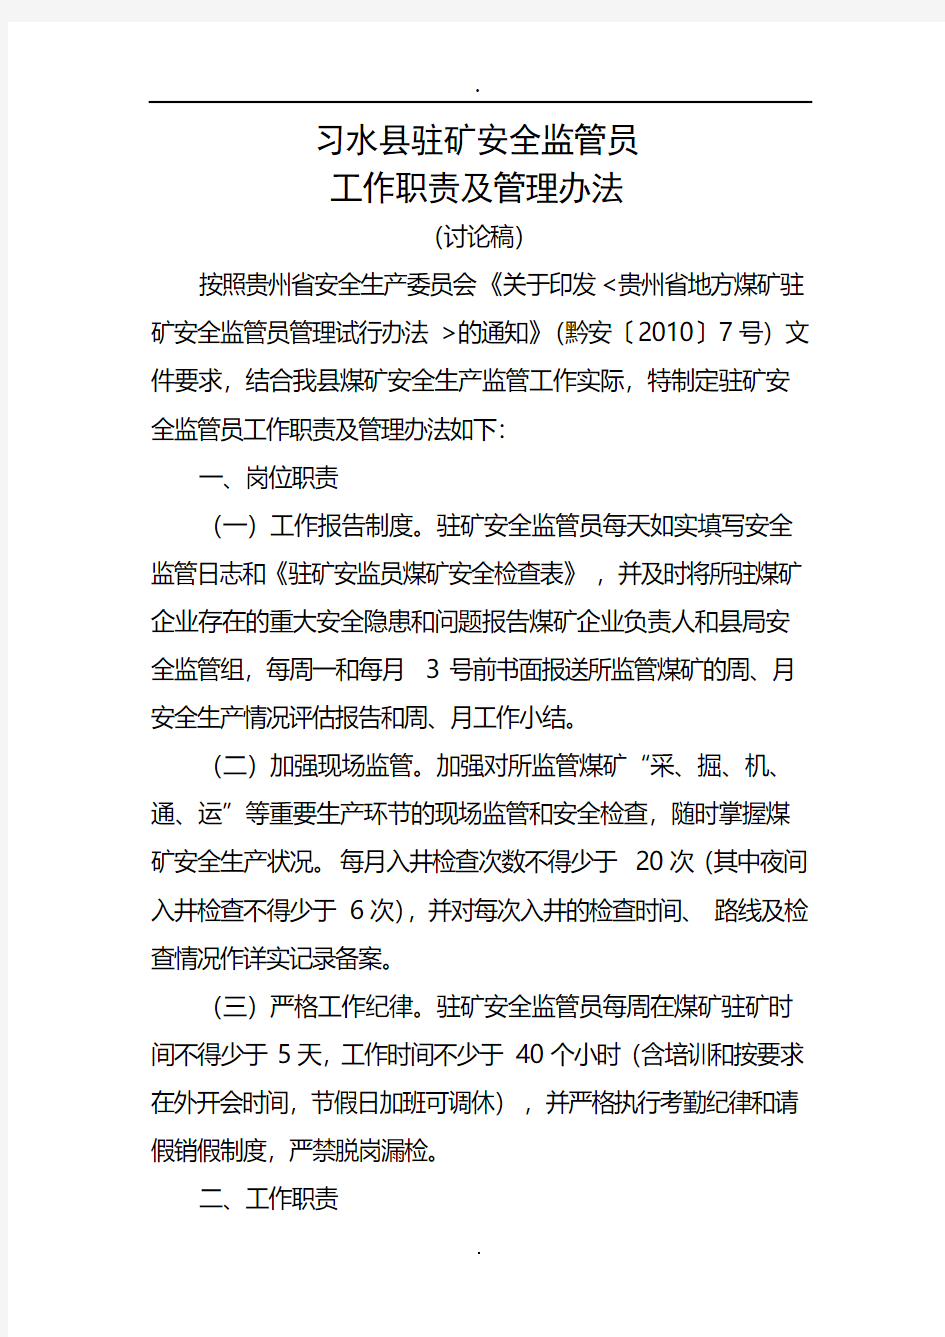 习水县驻矿安全监管员工作职责及考核办法